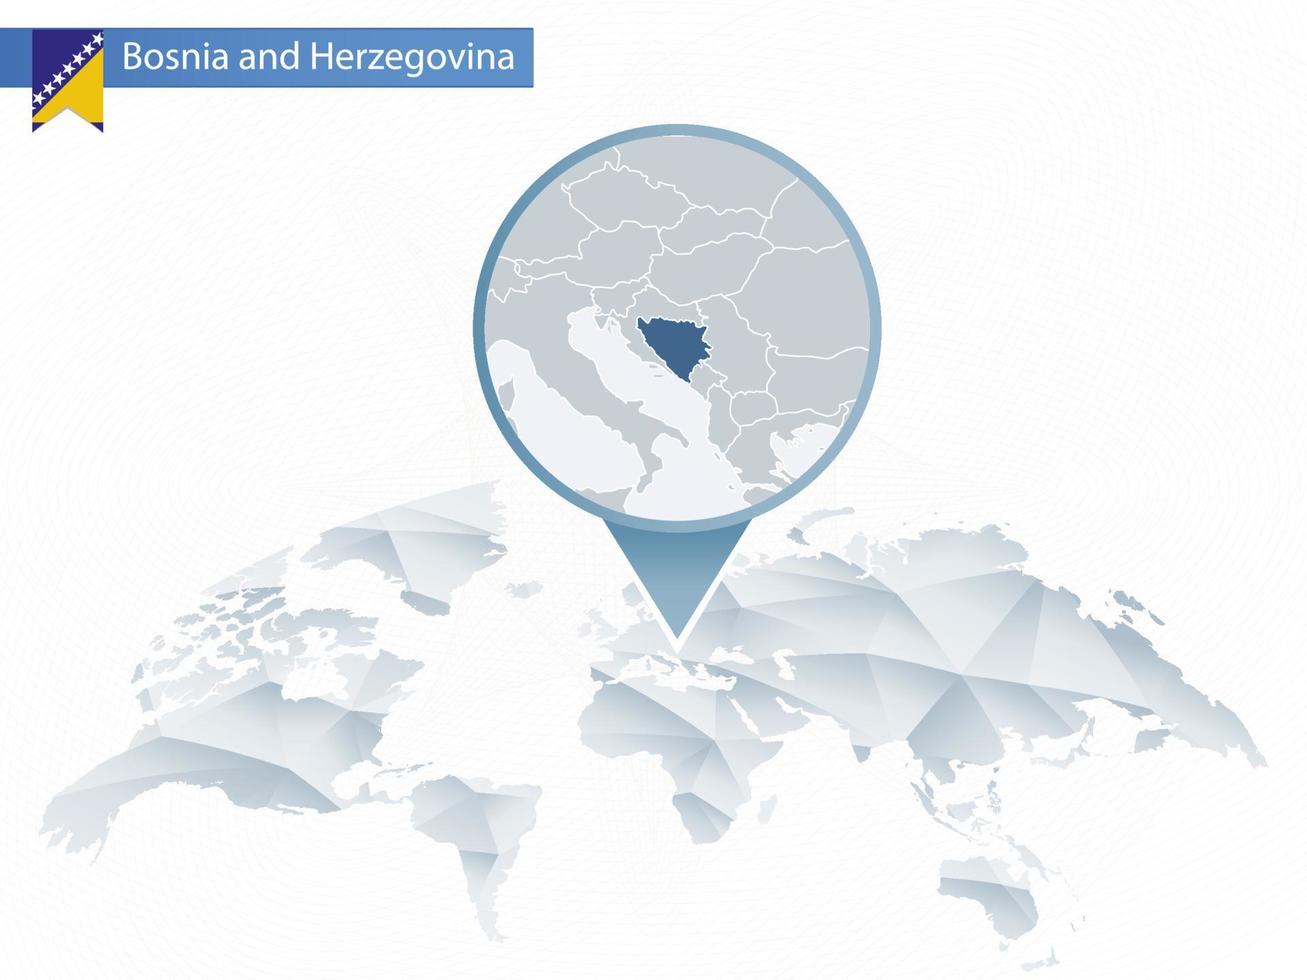 mapa-múndi arredondado abstrato com mapa detalhado fixado da Bósnia e Herzegovina. vetor